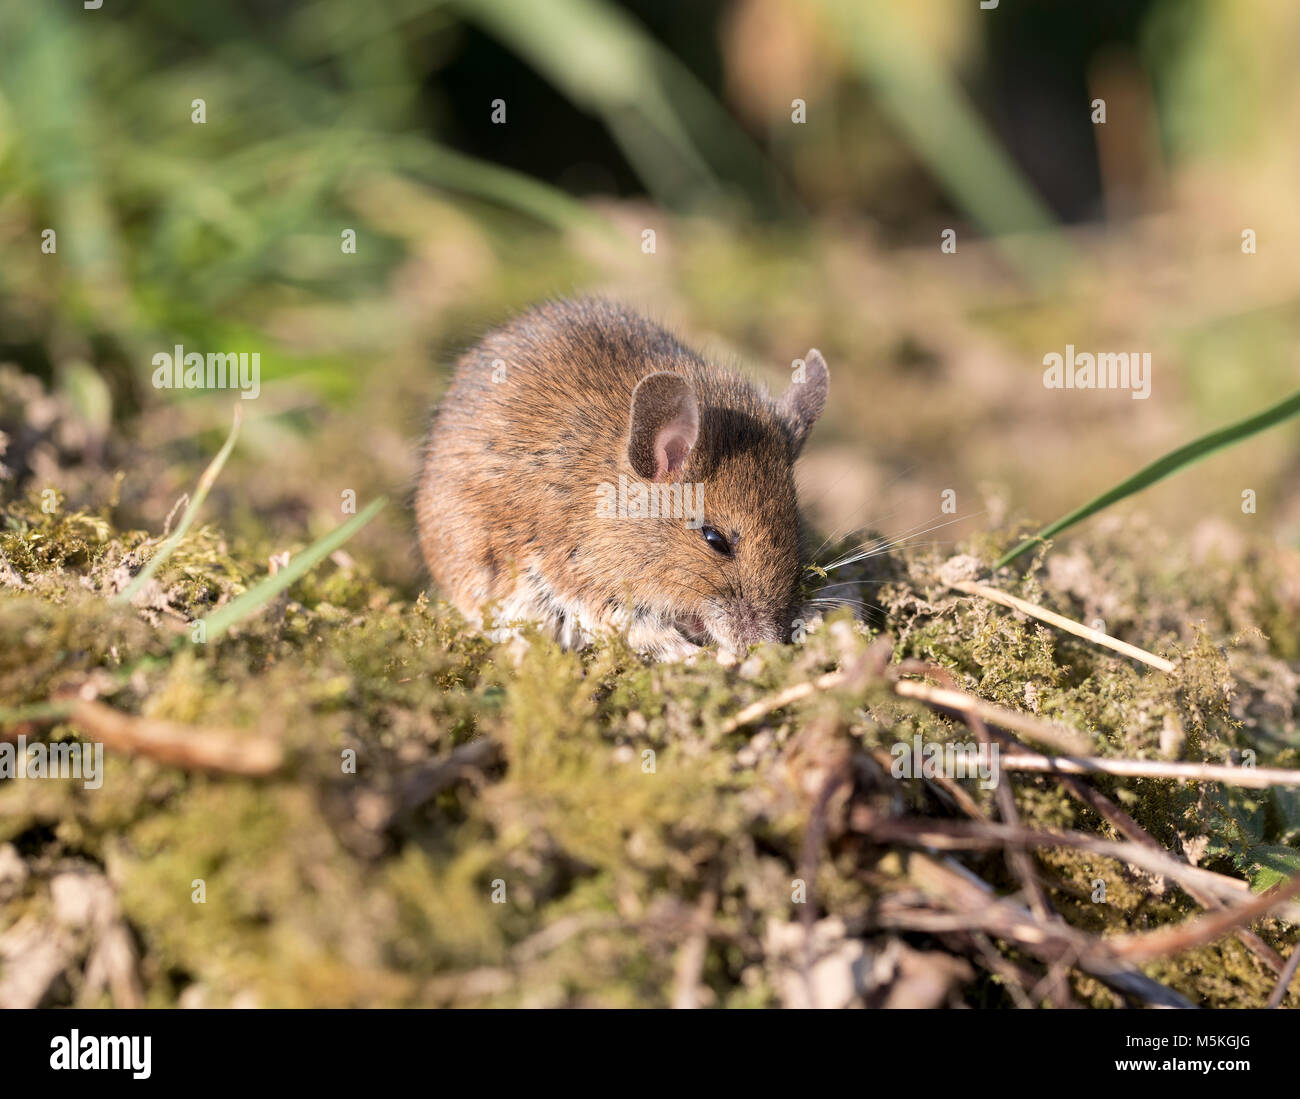 Madera (Apodemus sylvaticus) del ratón en un jardín,invierno,2018, UK Foto de stock